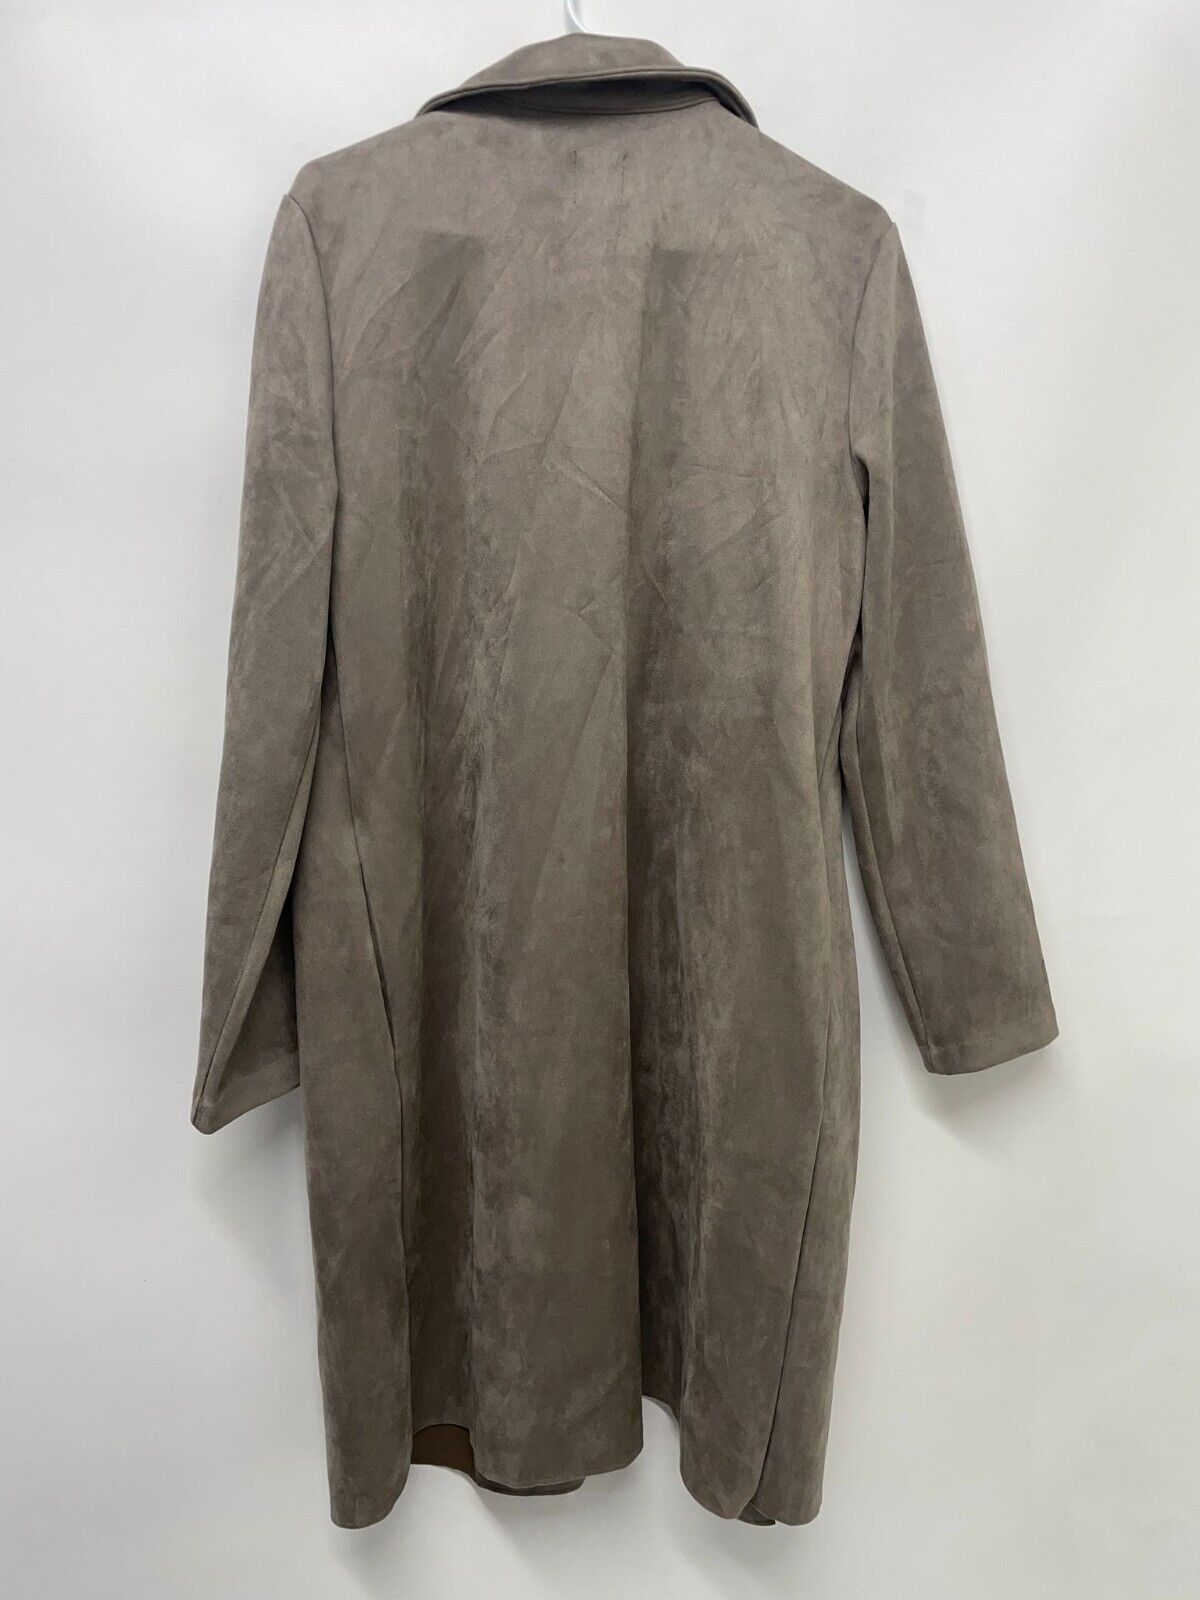 Zara Women L Faux Suede Coat Mid Mink Brown Long Blazer Open Jacket 2712/450/757